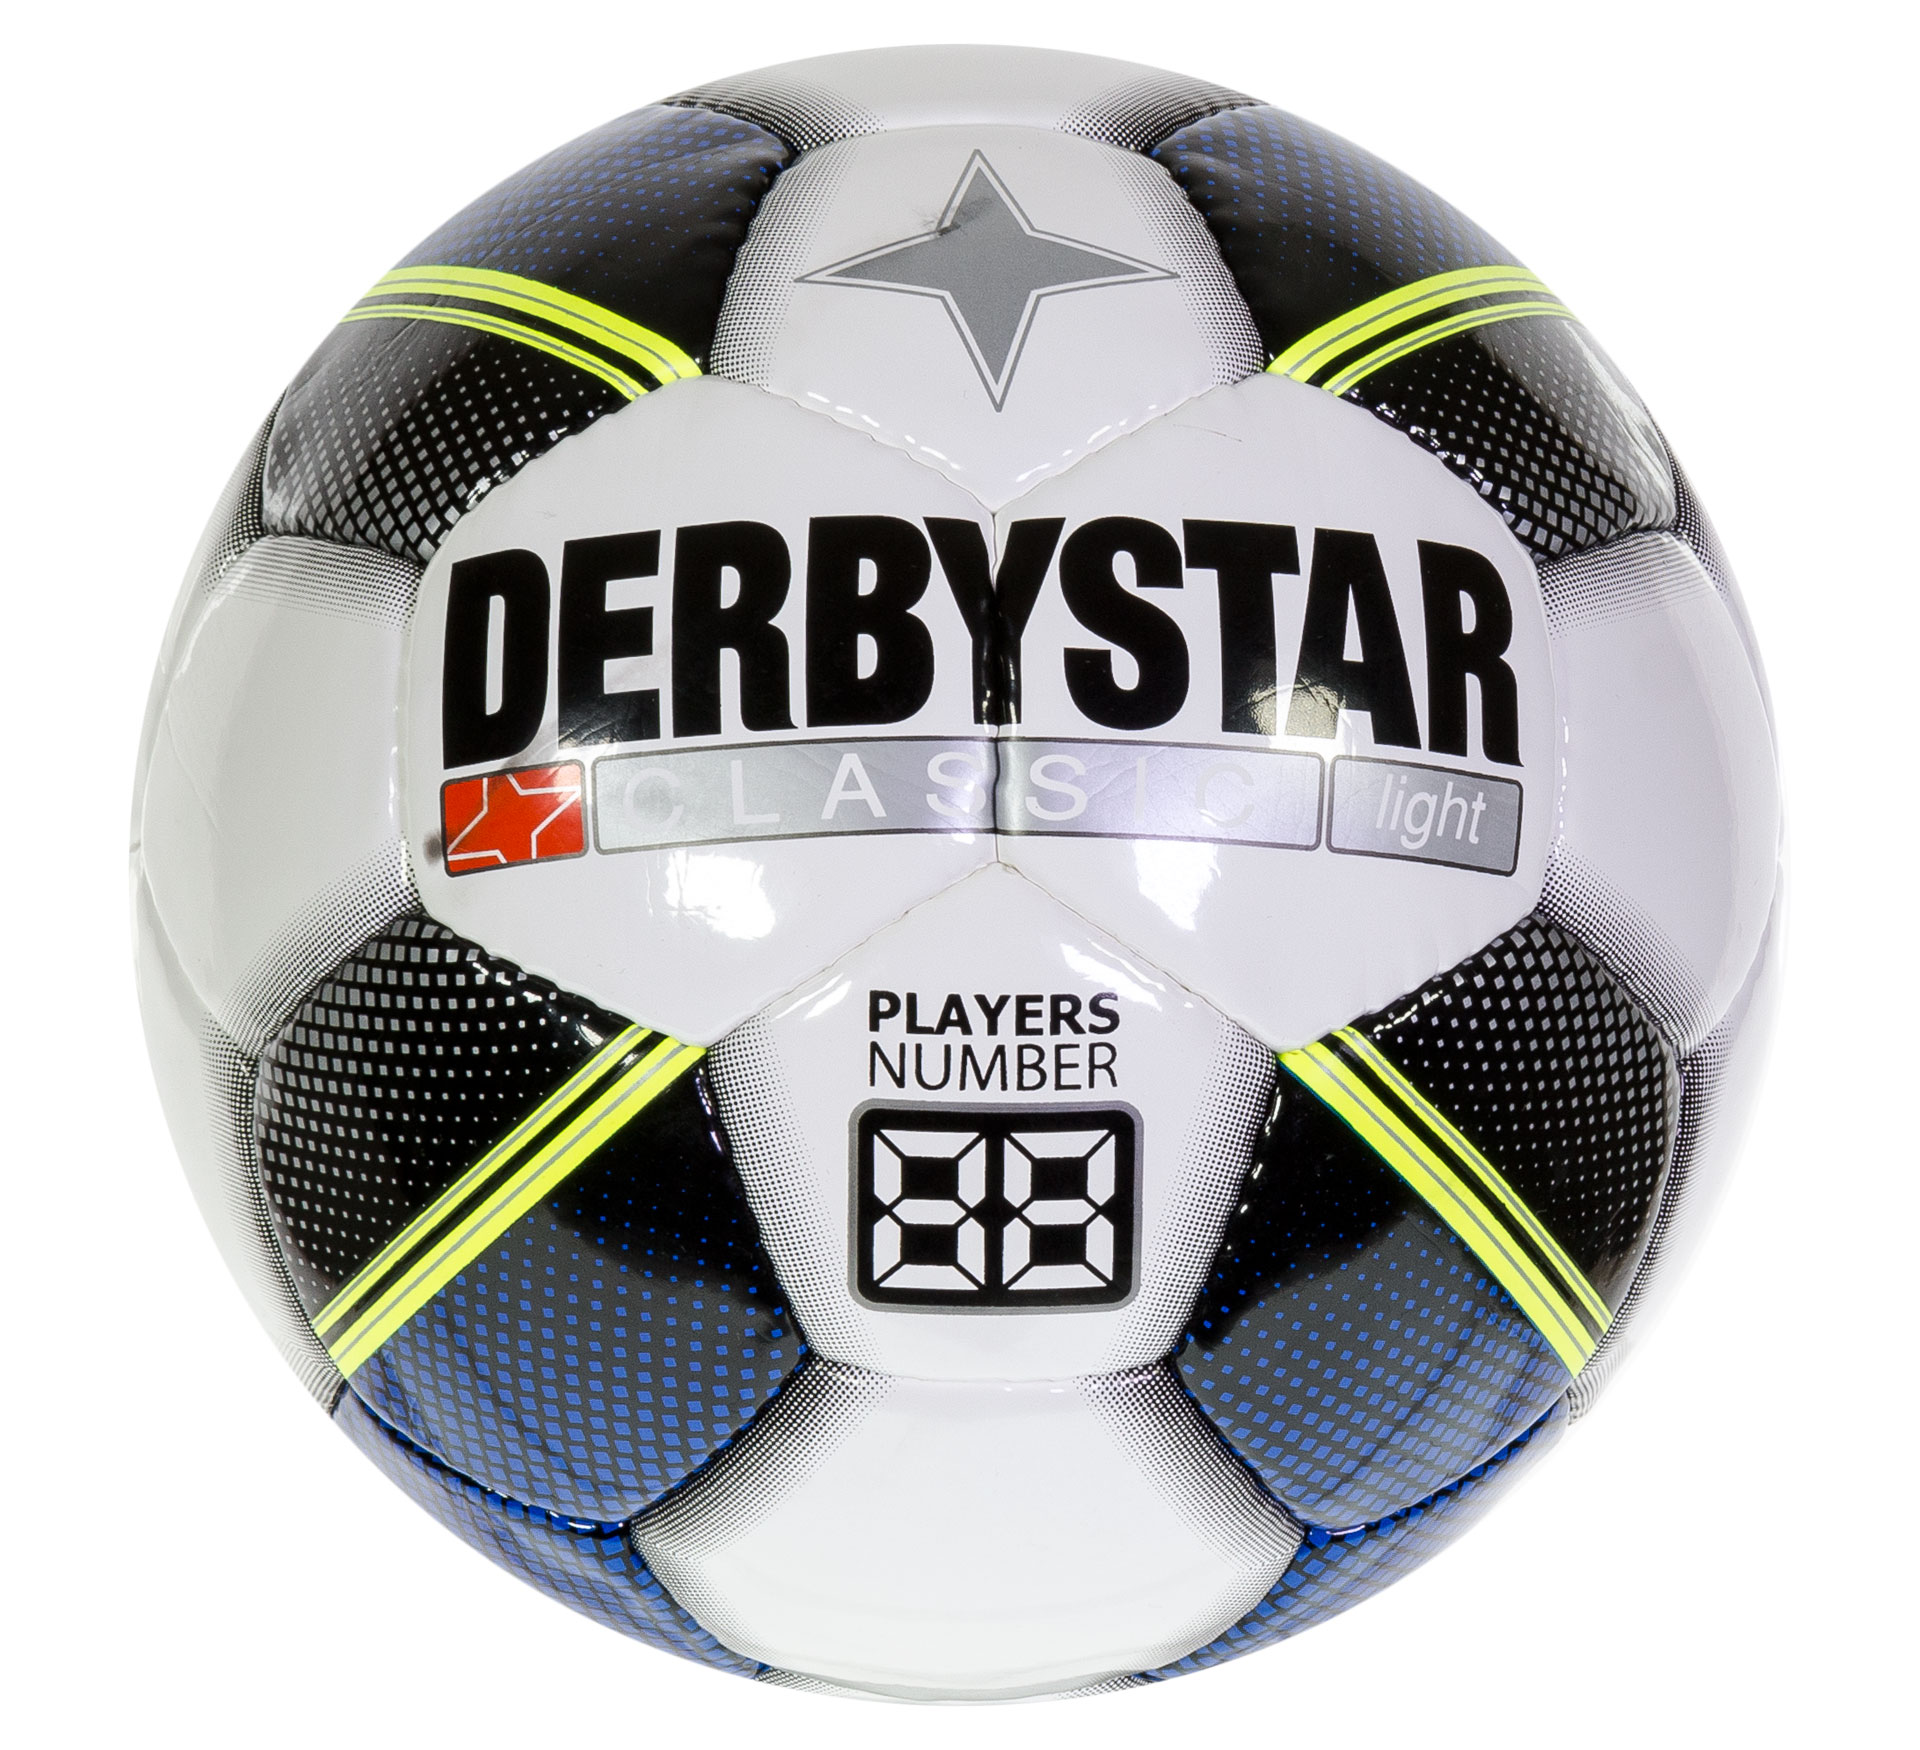 Le ballon de football Derbystar Classic Light pour enfants